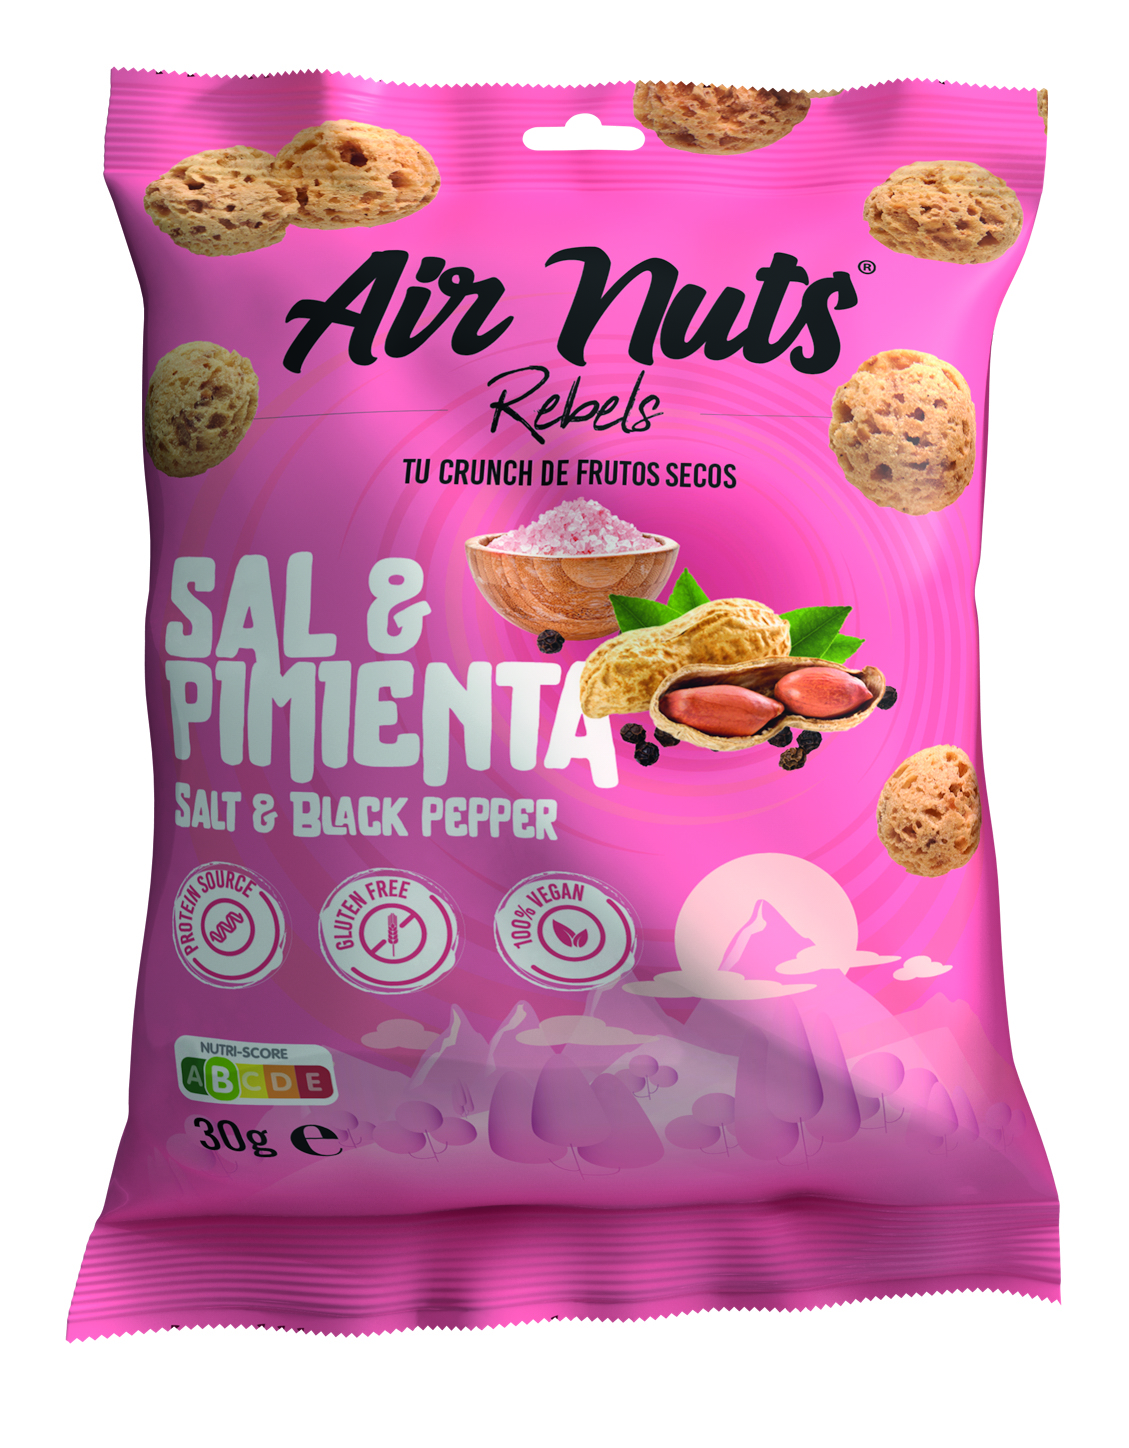 空气坚果椒盐 30g - Airnuts